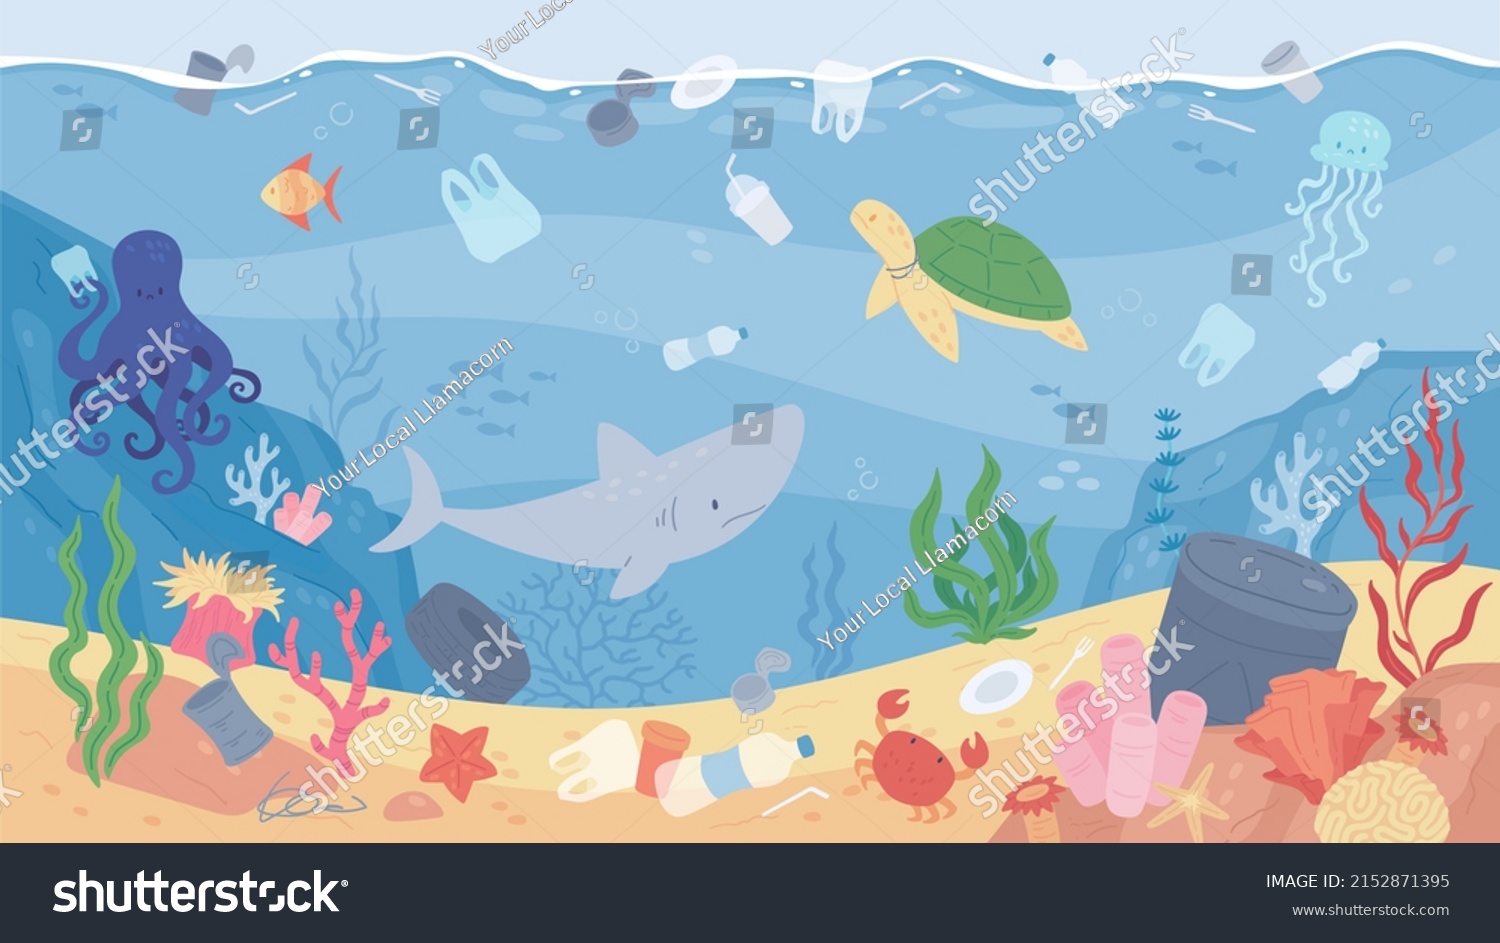 15 602件の 海洋ごみ のイラスト素材 画像 ベクター画像 Shutterstock